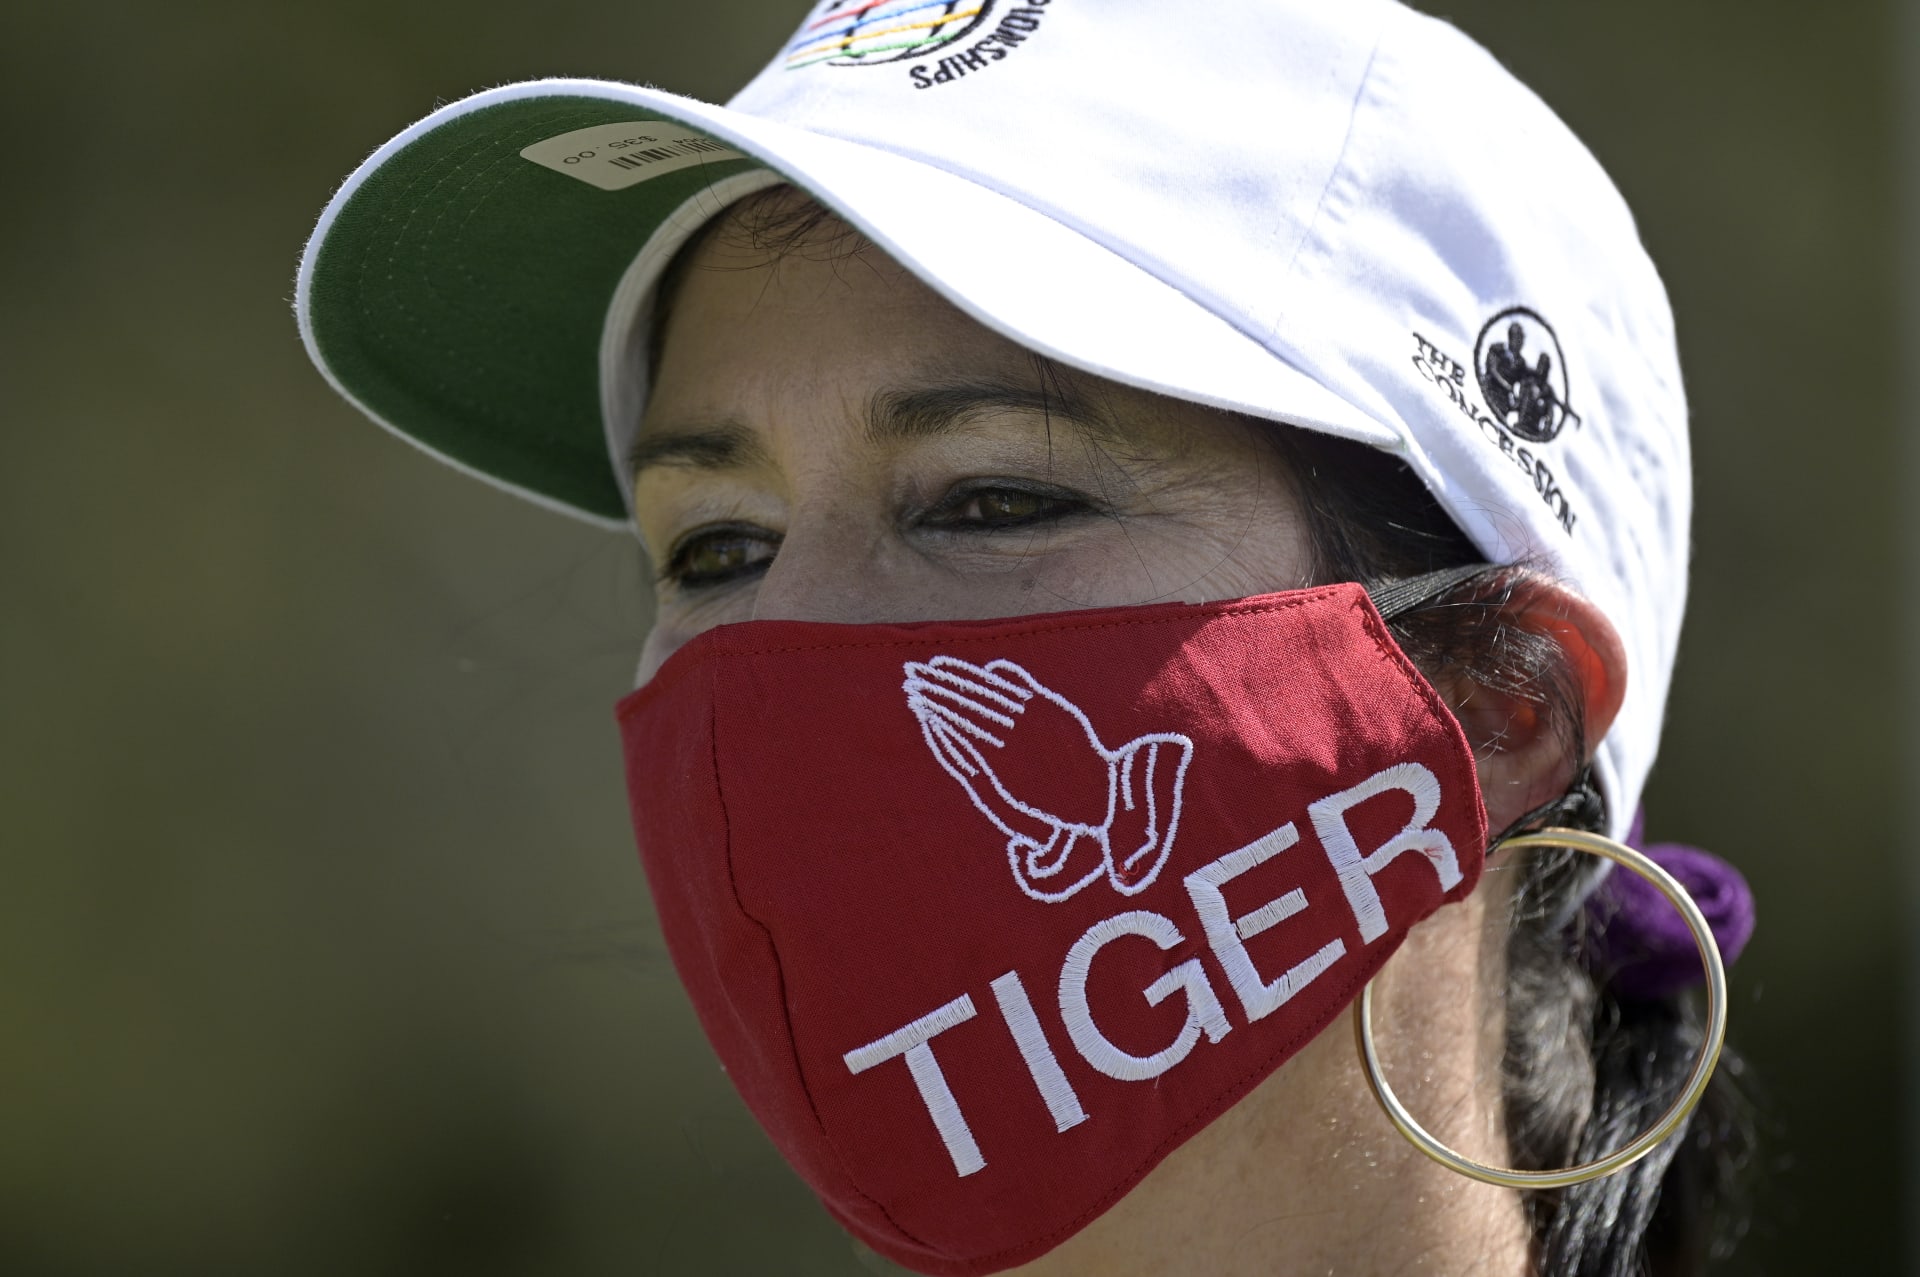 Nejen golfisté, ale také fanoušci vyjadřují podporu zraněnému Tigerovi Woodsovi.